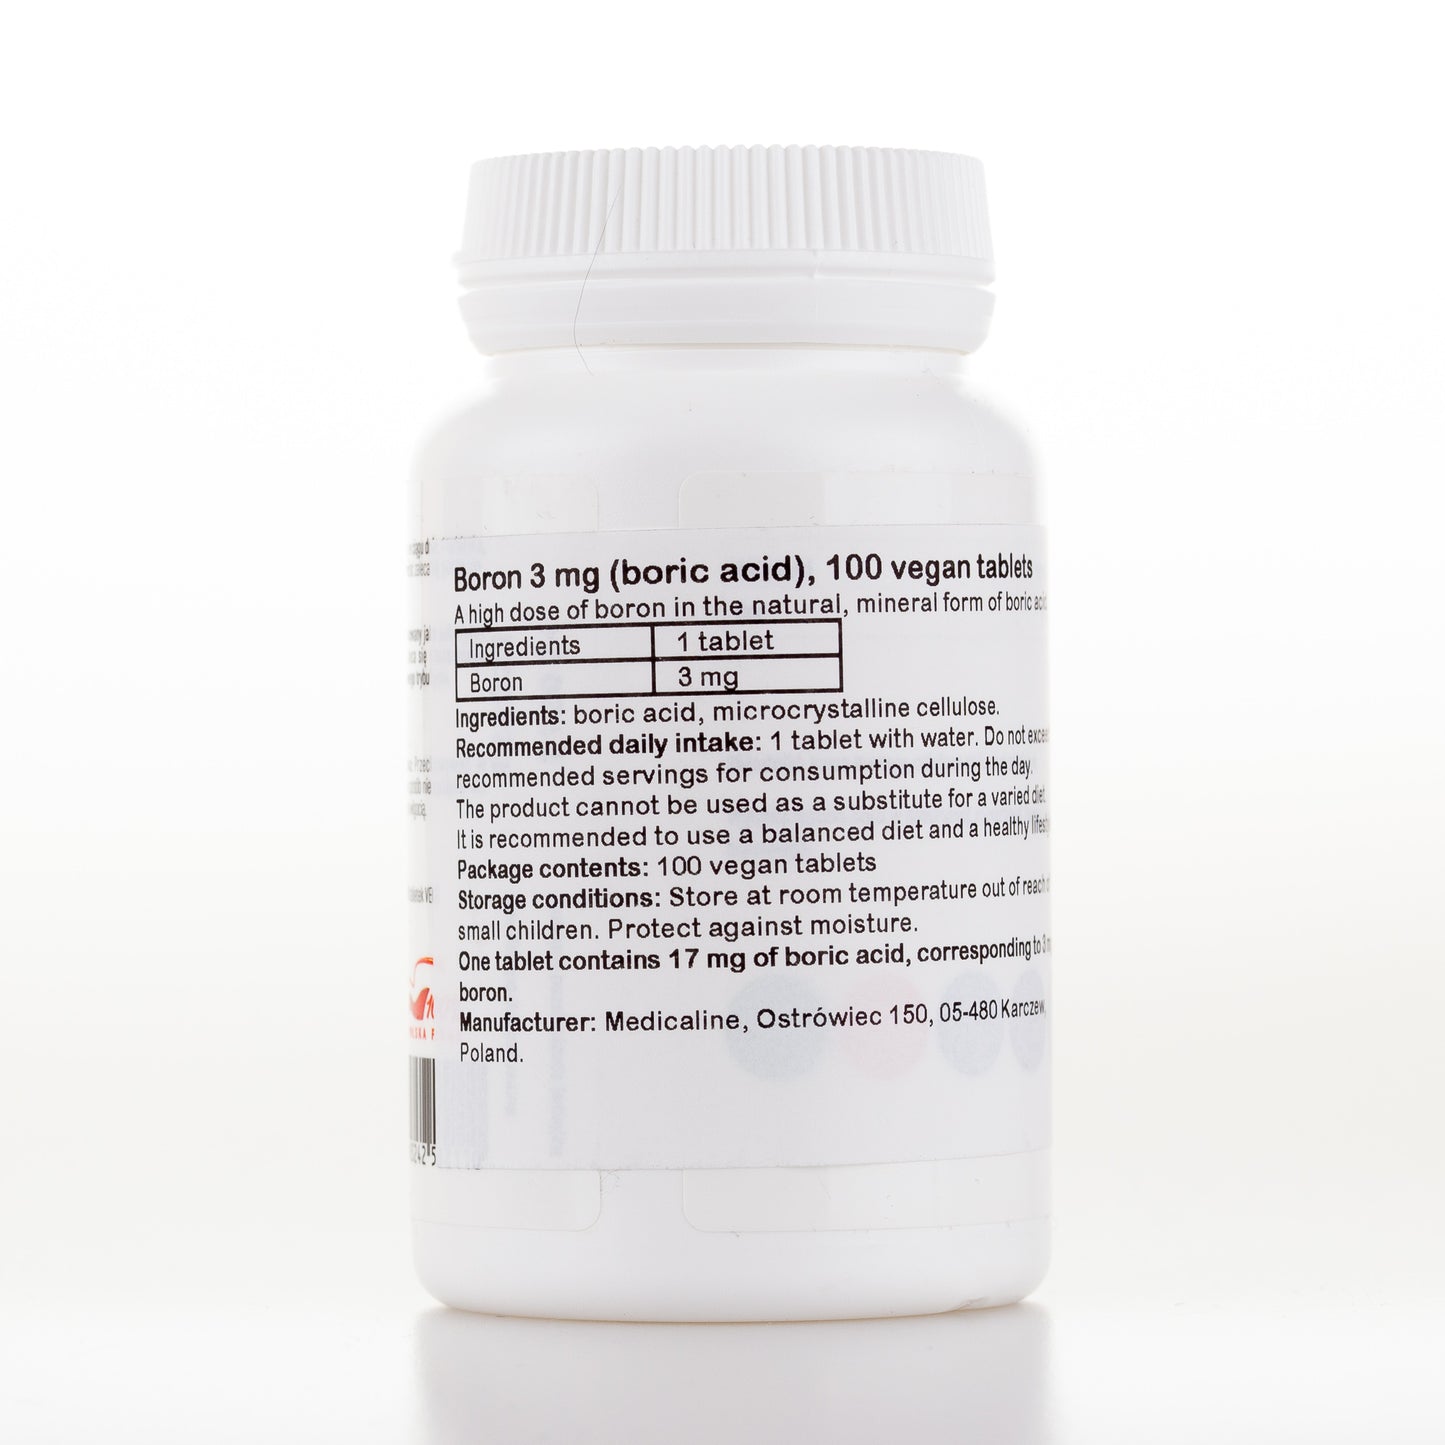 Boron 3 mg (boric acid), 100 vegan tablets